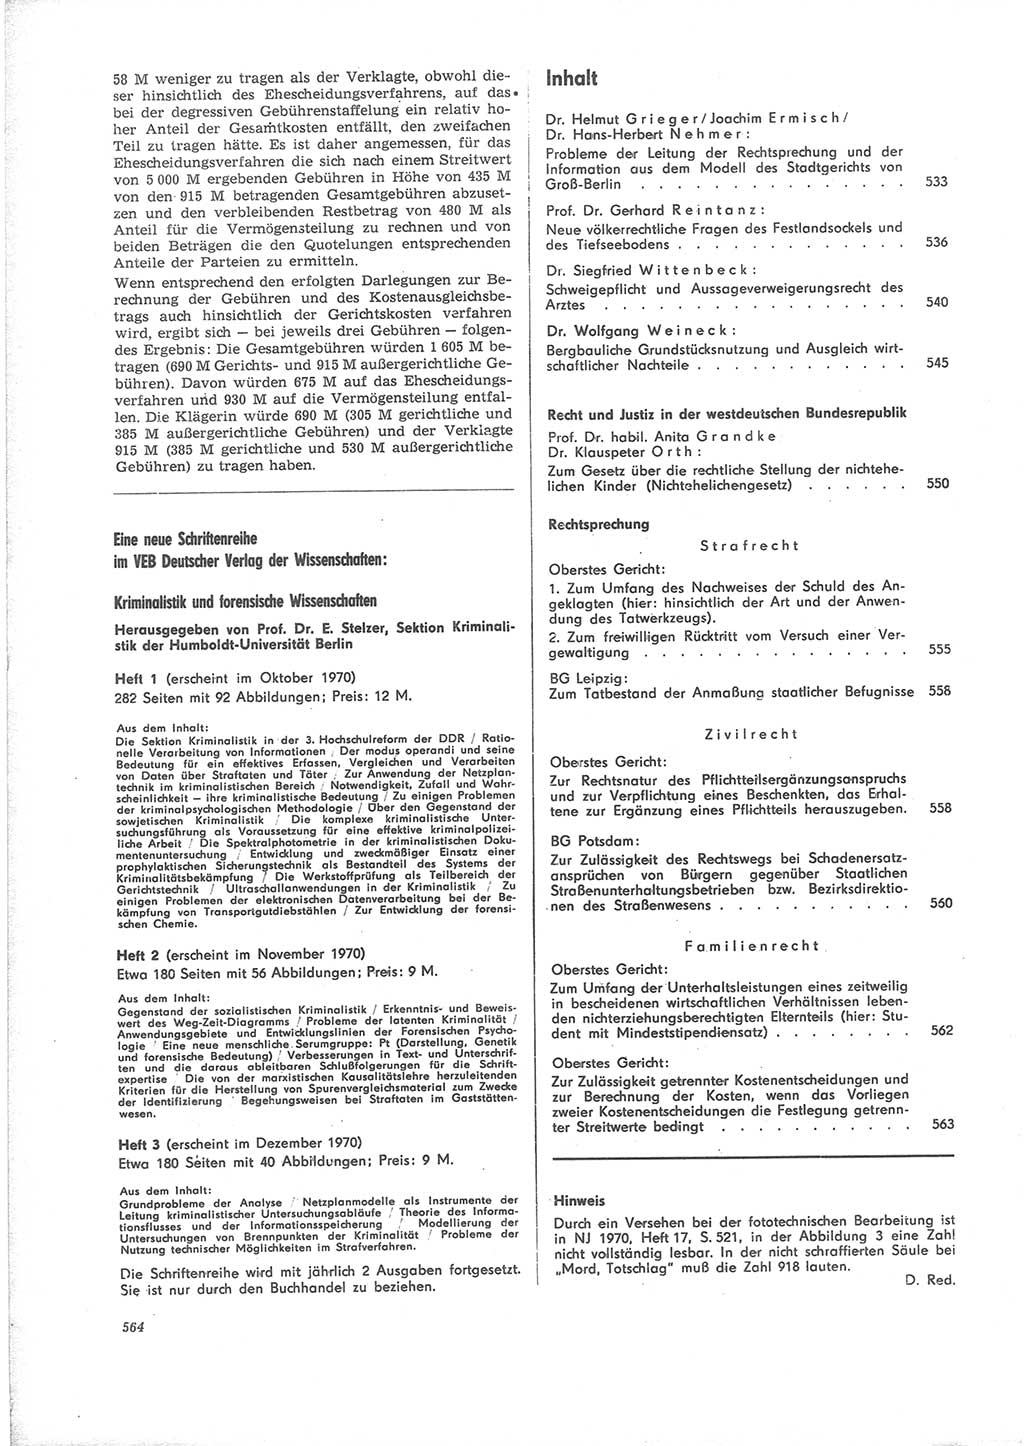 Neue Justiz (NJ), Zeitschrift für Recht und Rechtswissenschaft [Deutsche Demokratische Republik (DDR)], 24. Jahrgang 1970, Seite 564 (NJ DDR 1970, S. 564)